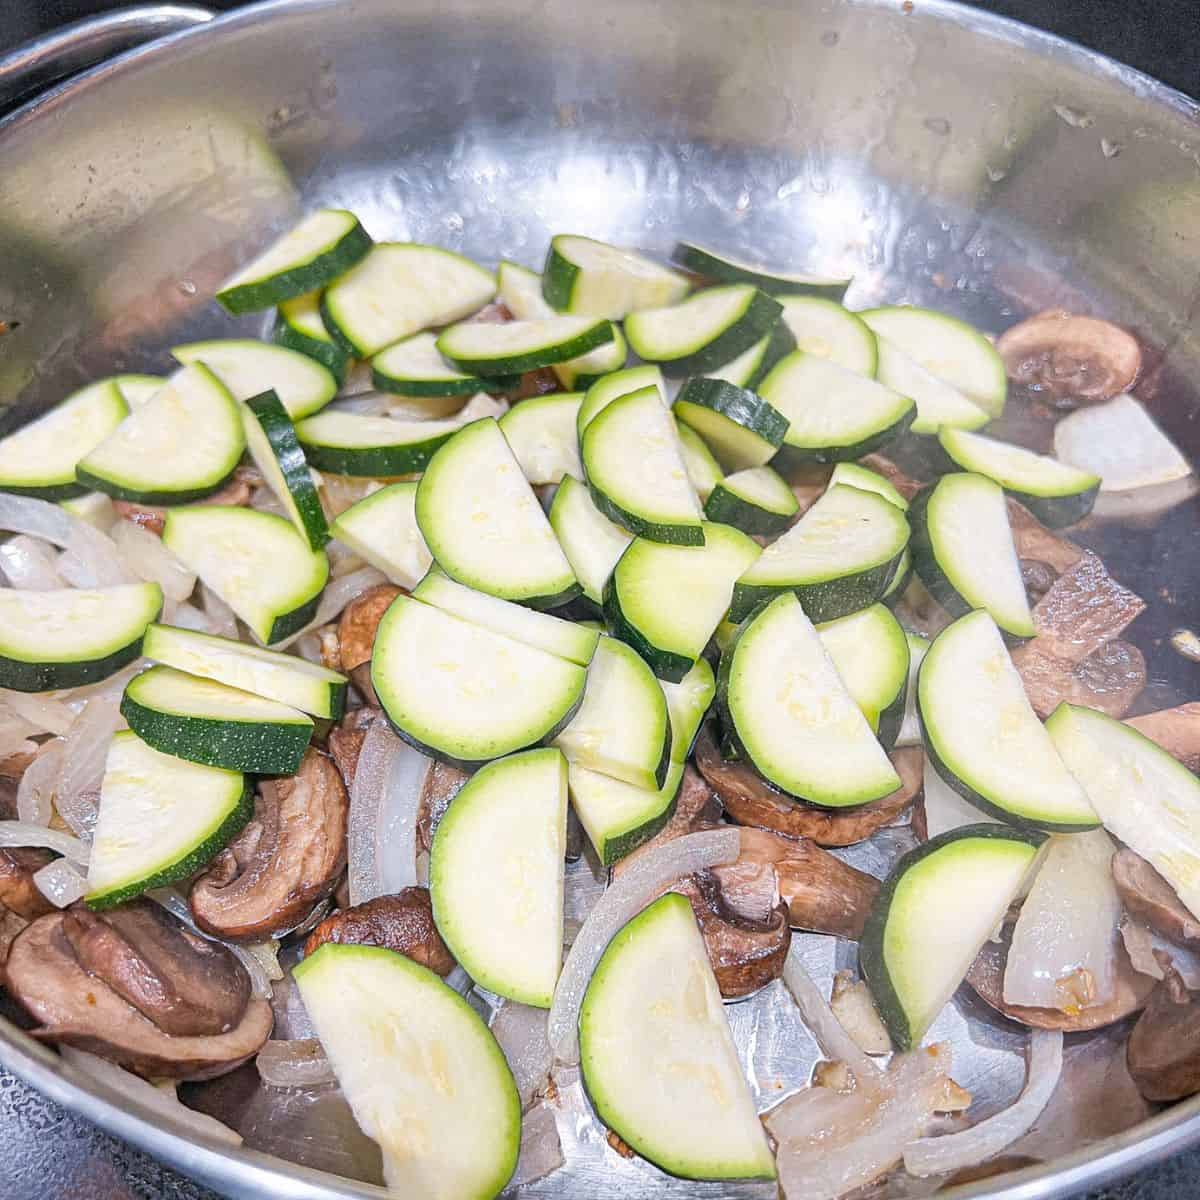 Adding zucchini into the skillet.